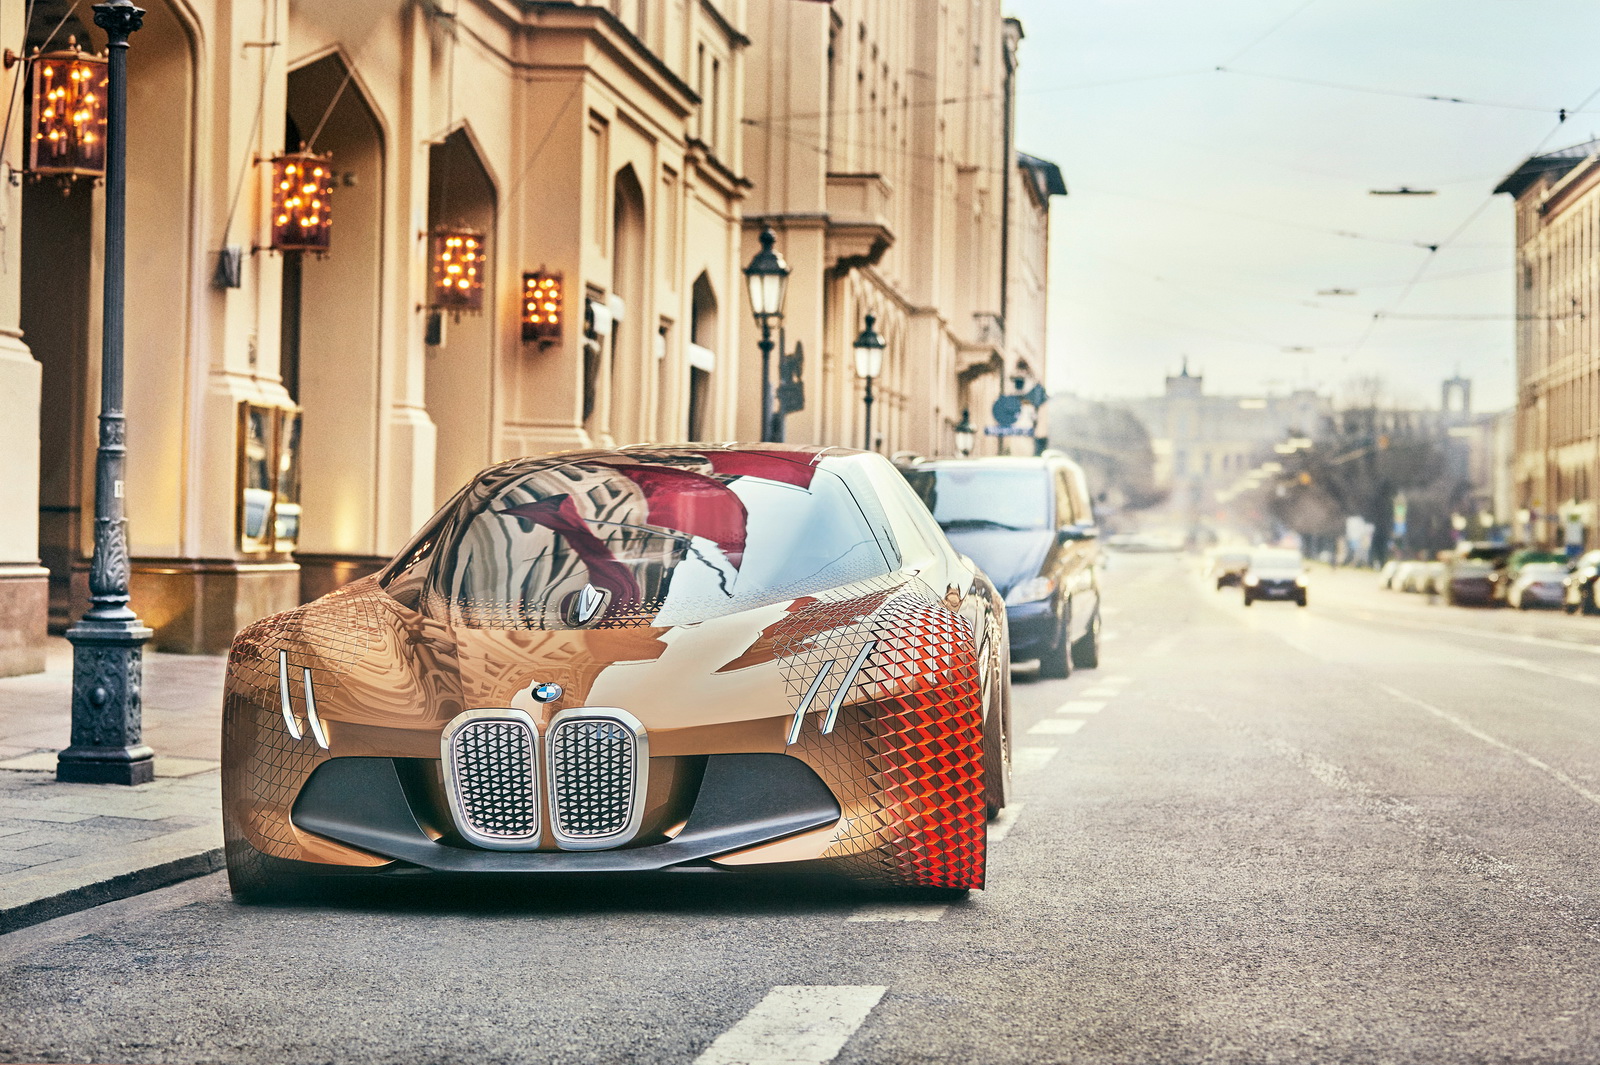 
Hãng BMW hiện vẫn đang tiếp tục thực hiện chuỗi sự kiện kỷ niệm 100 năm thành lập. Một trong số đó là sự kiện đưa mẫu xe concept mới ra mắt BMW Vision Next 100 đến Bắc Kinh, Trung Quốc, để giới thiệu với khách hàng châu Á.
